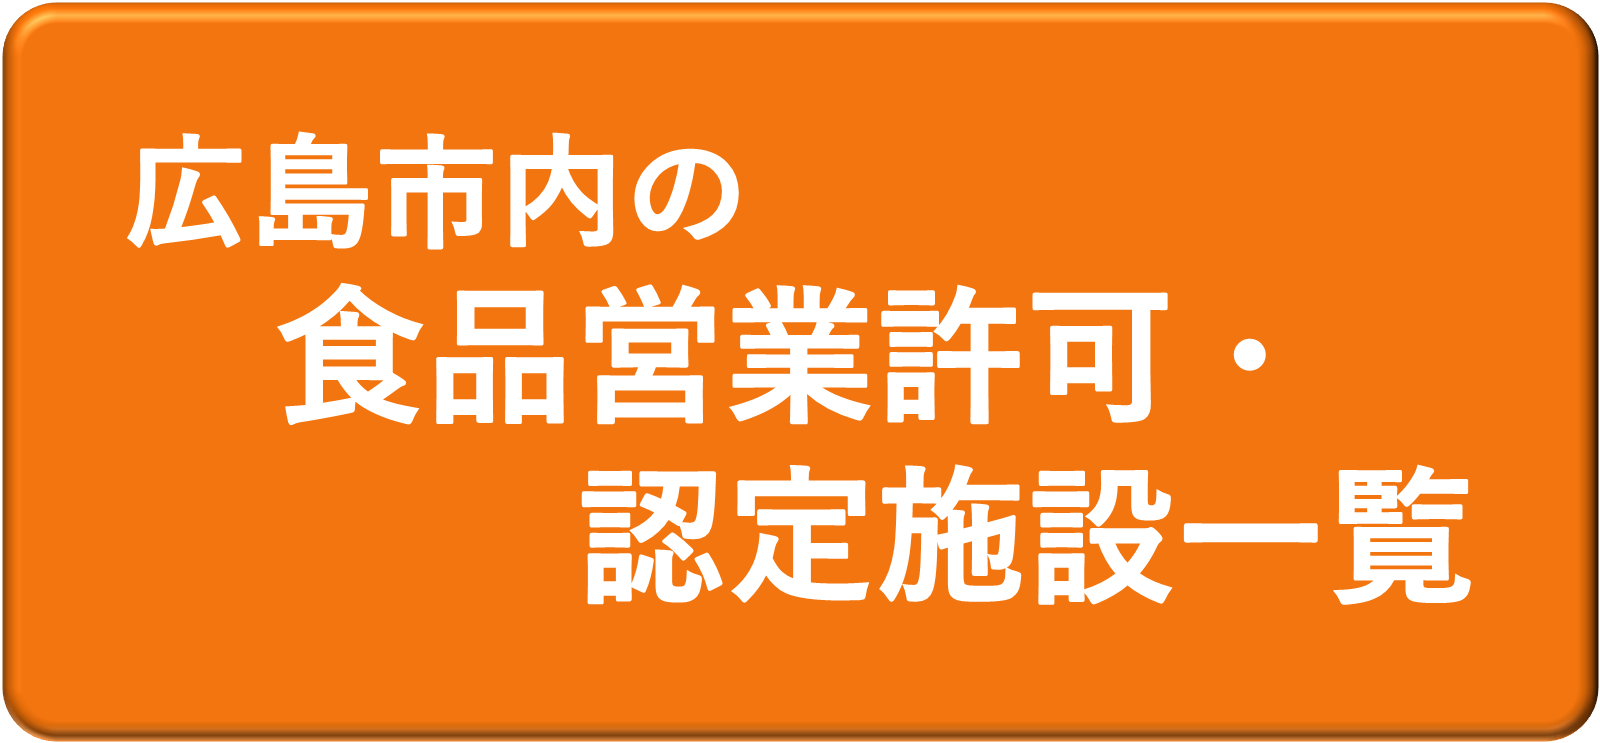 広島市内の食品営業許可・認定施設一覧